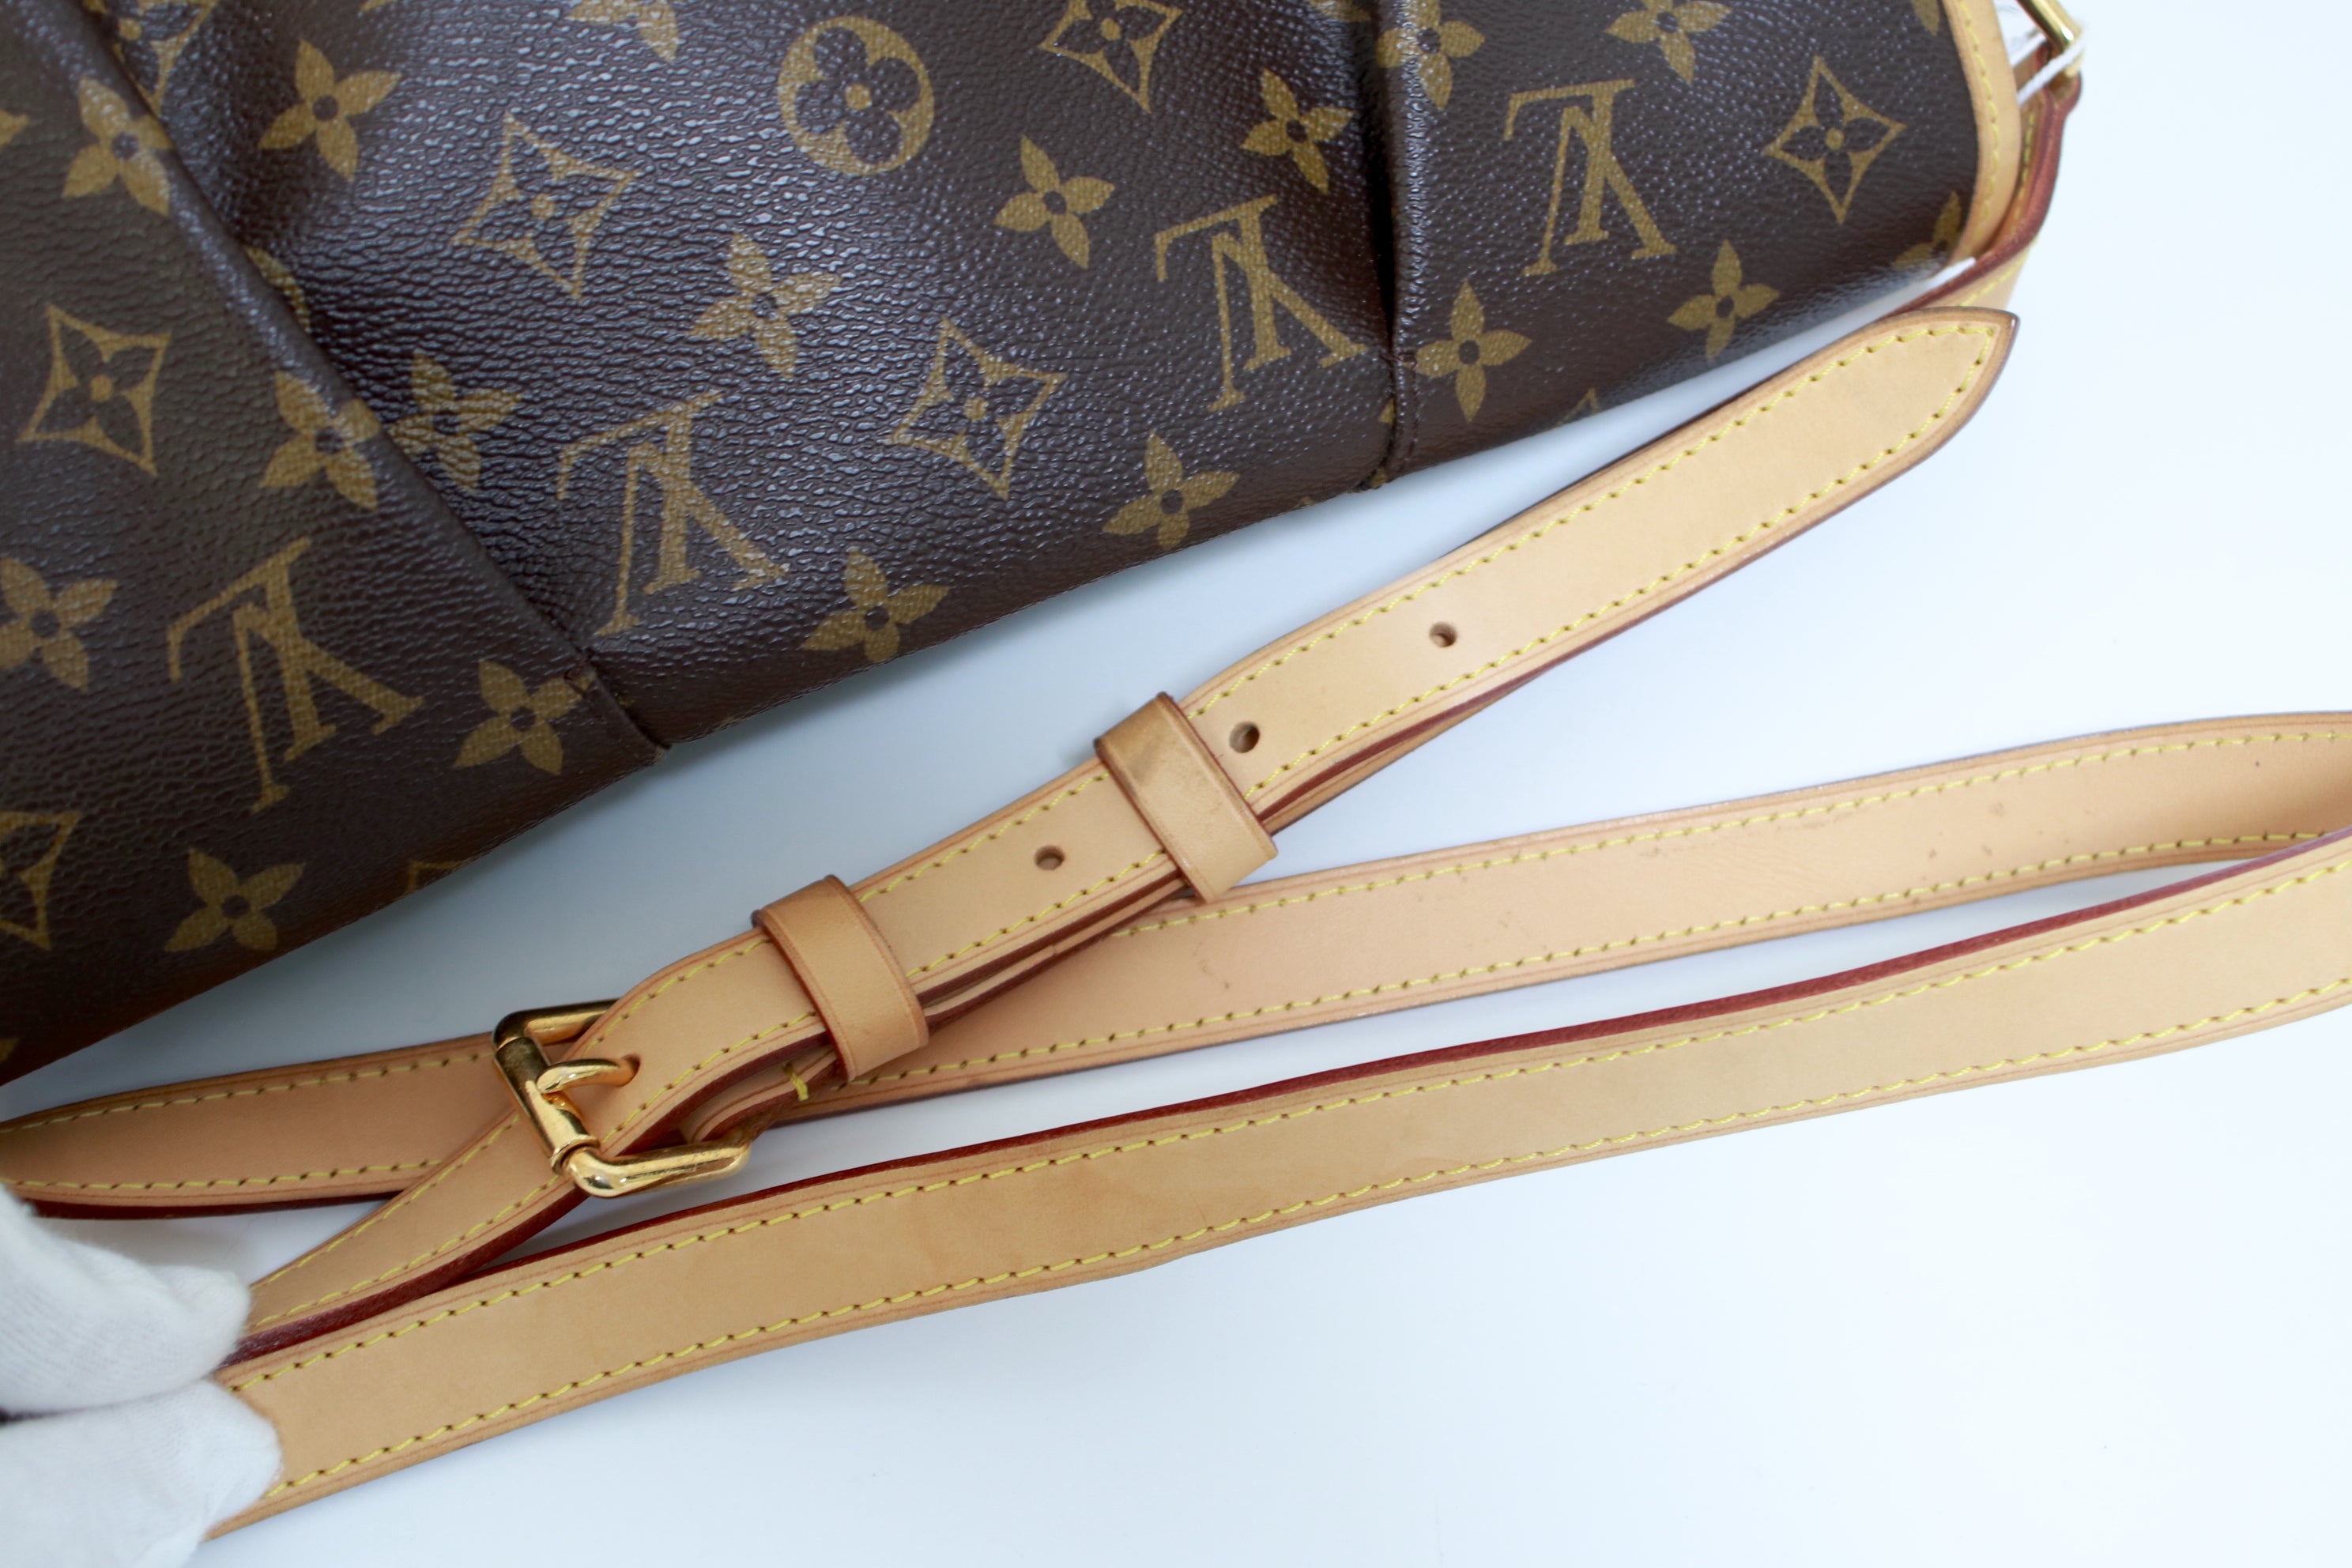 Louis Vuitton Menilmontant MM Shoulder Bag Used (6555)